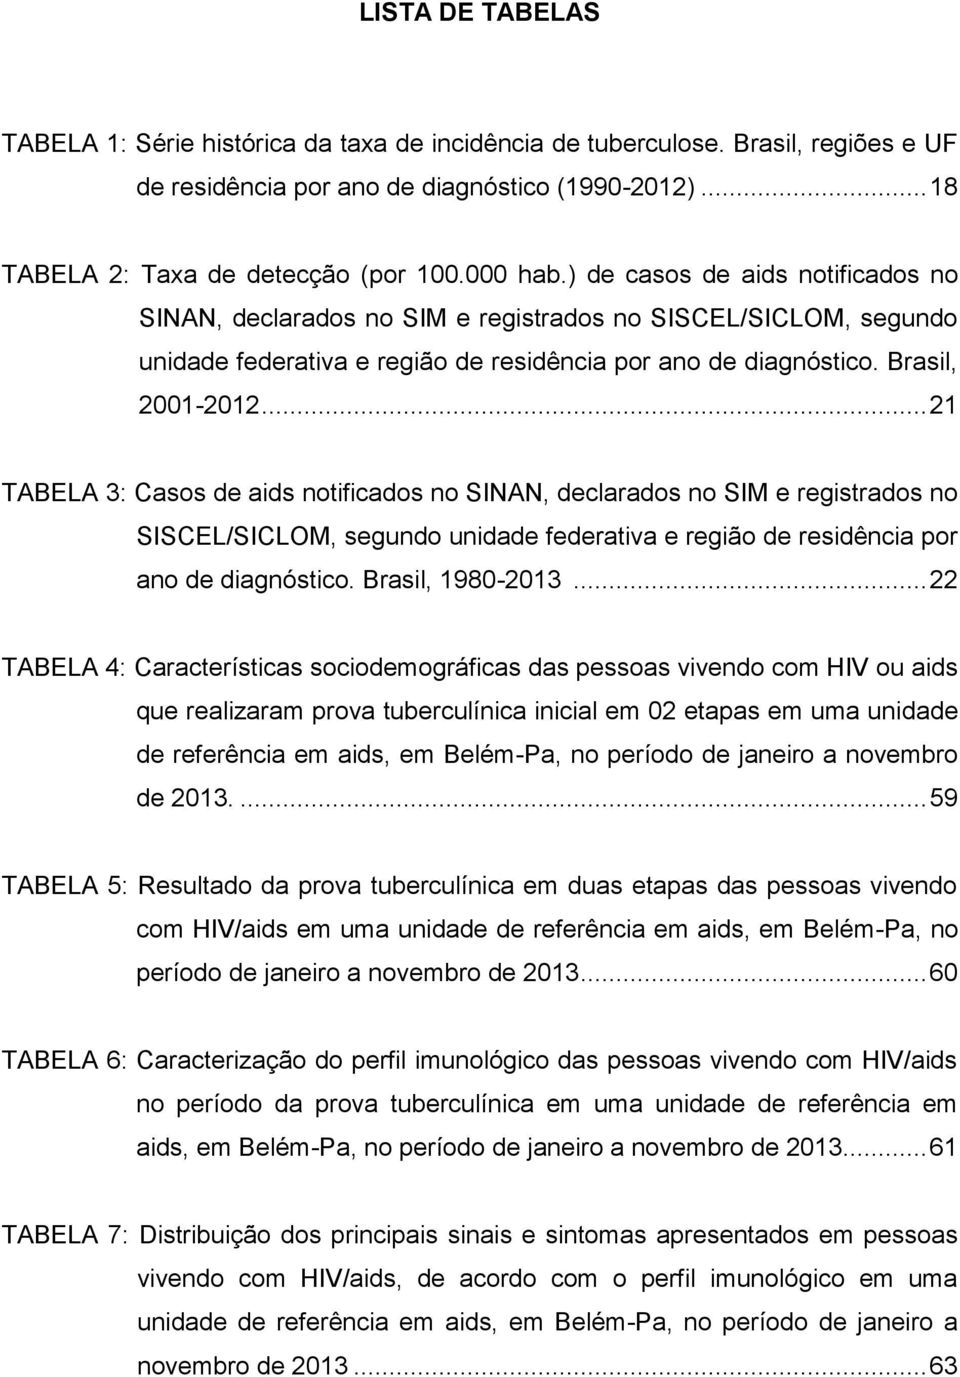 .. 21 TABELA 3: Casos de aids notificados no SINAN, declarados no SIM e registrados no SISCEL/SICLOM, segundo unidade federativa e região de residência por ano de diagnóstico. Brasil, 1980-2013.